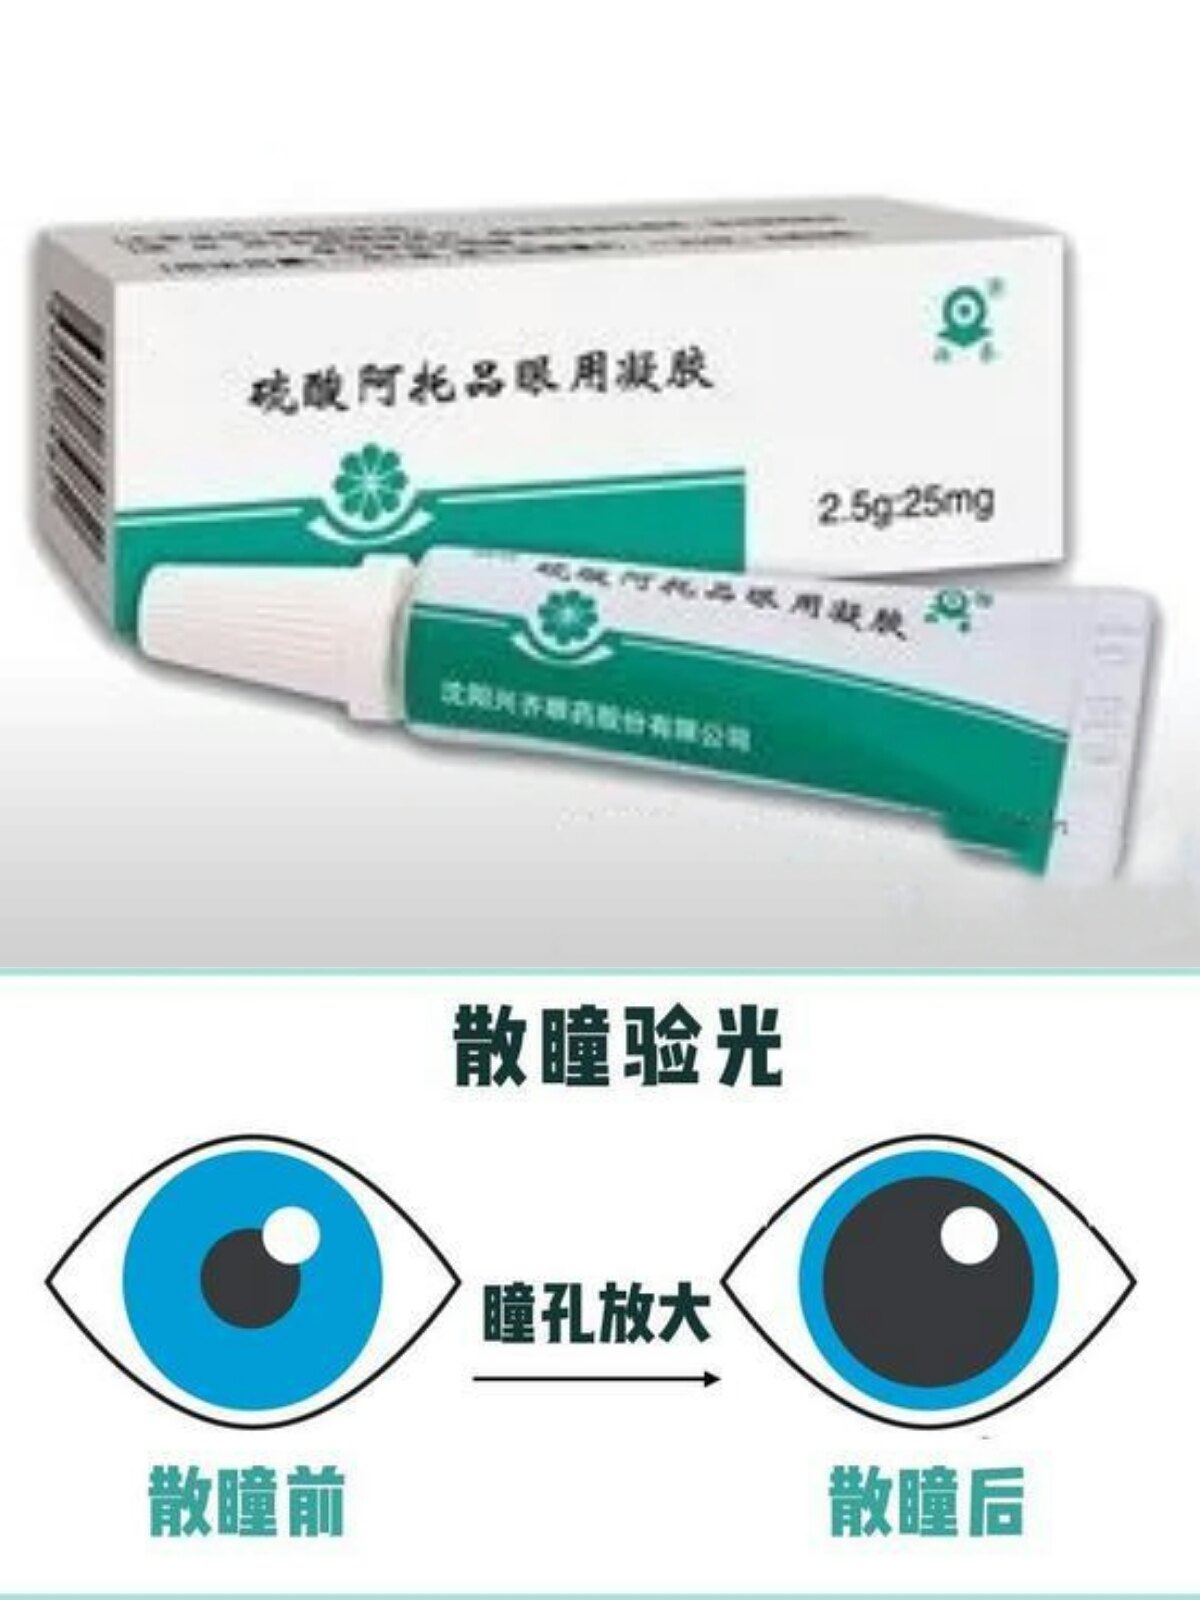 阿托品眼用凝胶的使用方法和注意事项